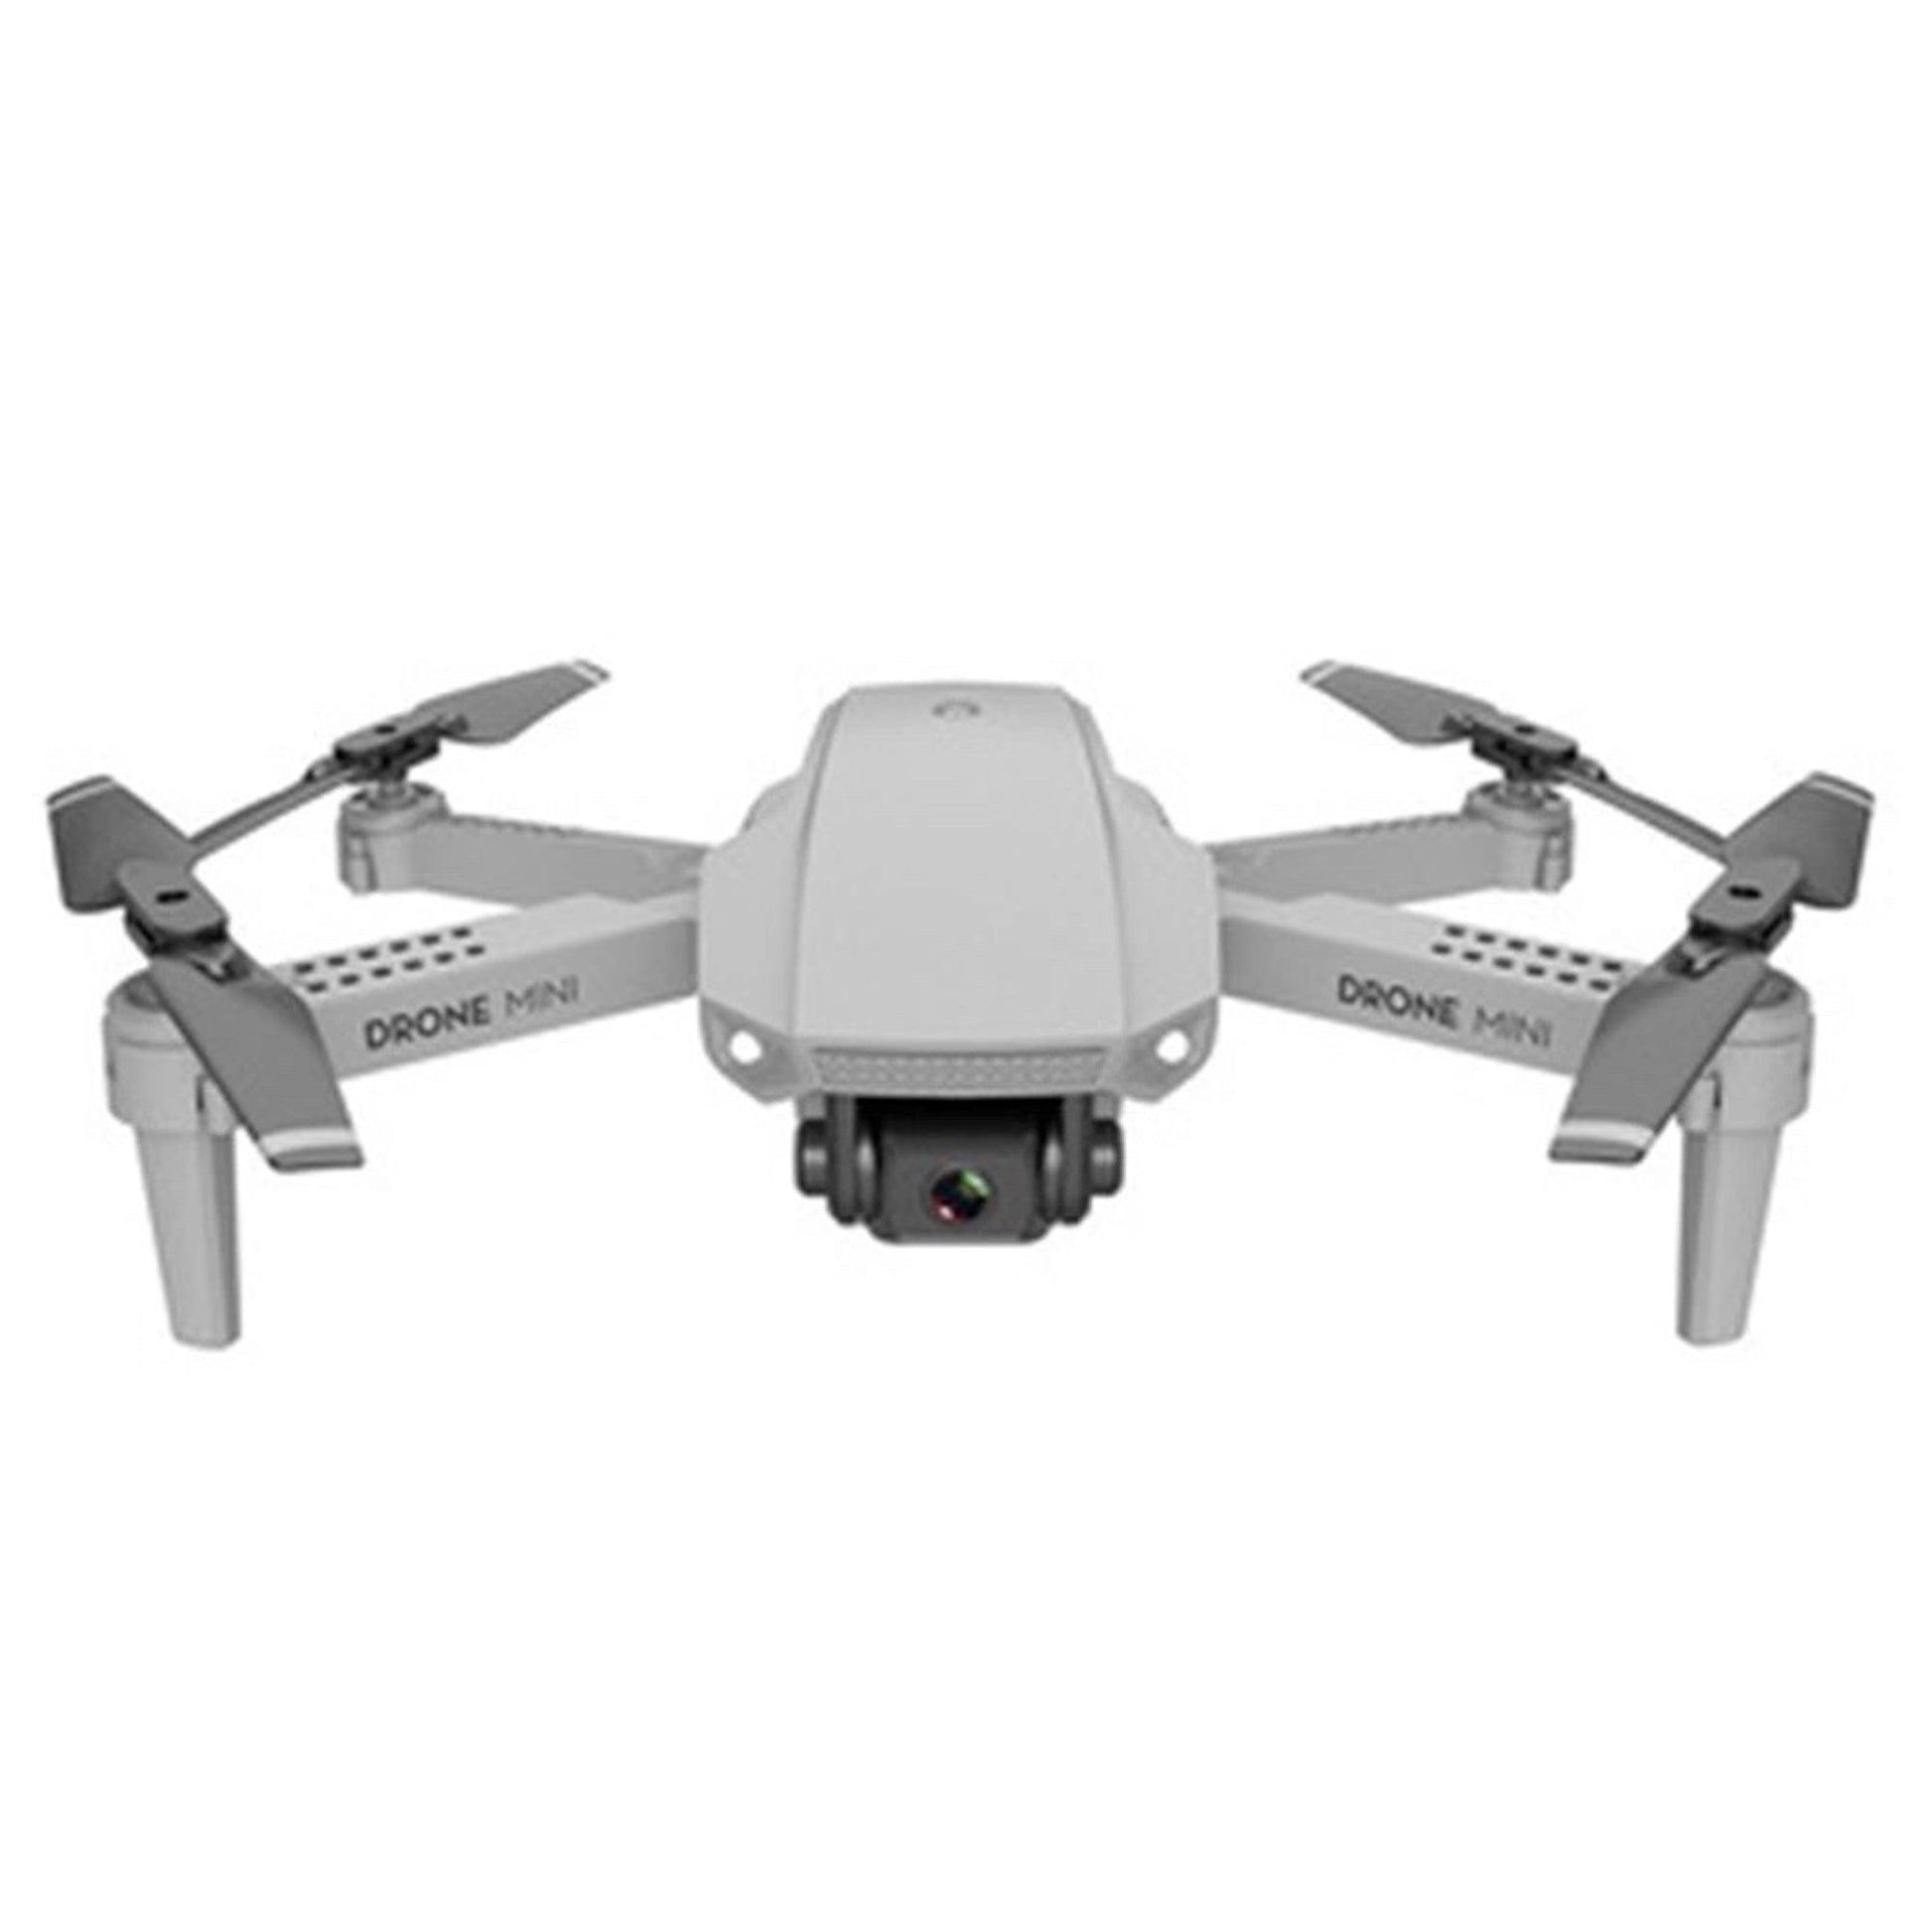 Drone Logivision E88 avec caméra 4K - Drone avec caméra  extérieure/intérieure - Mini